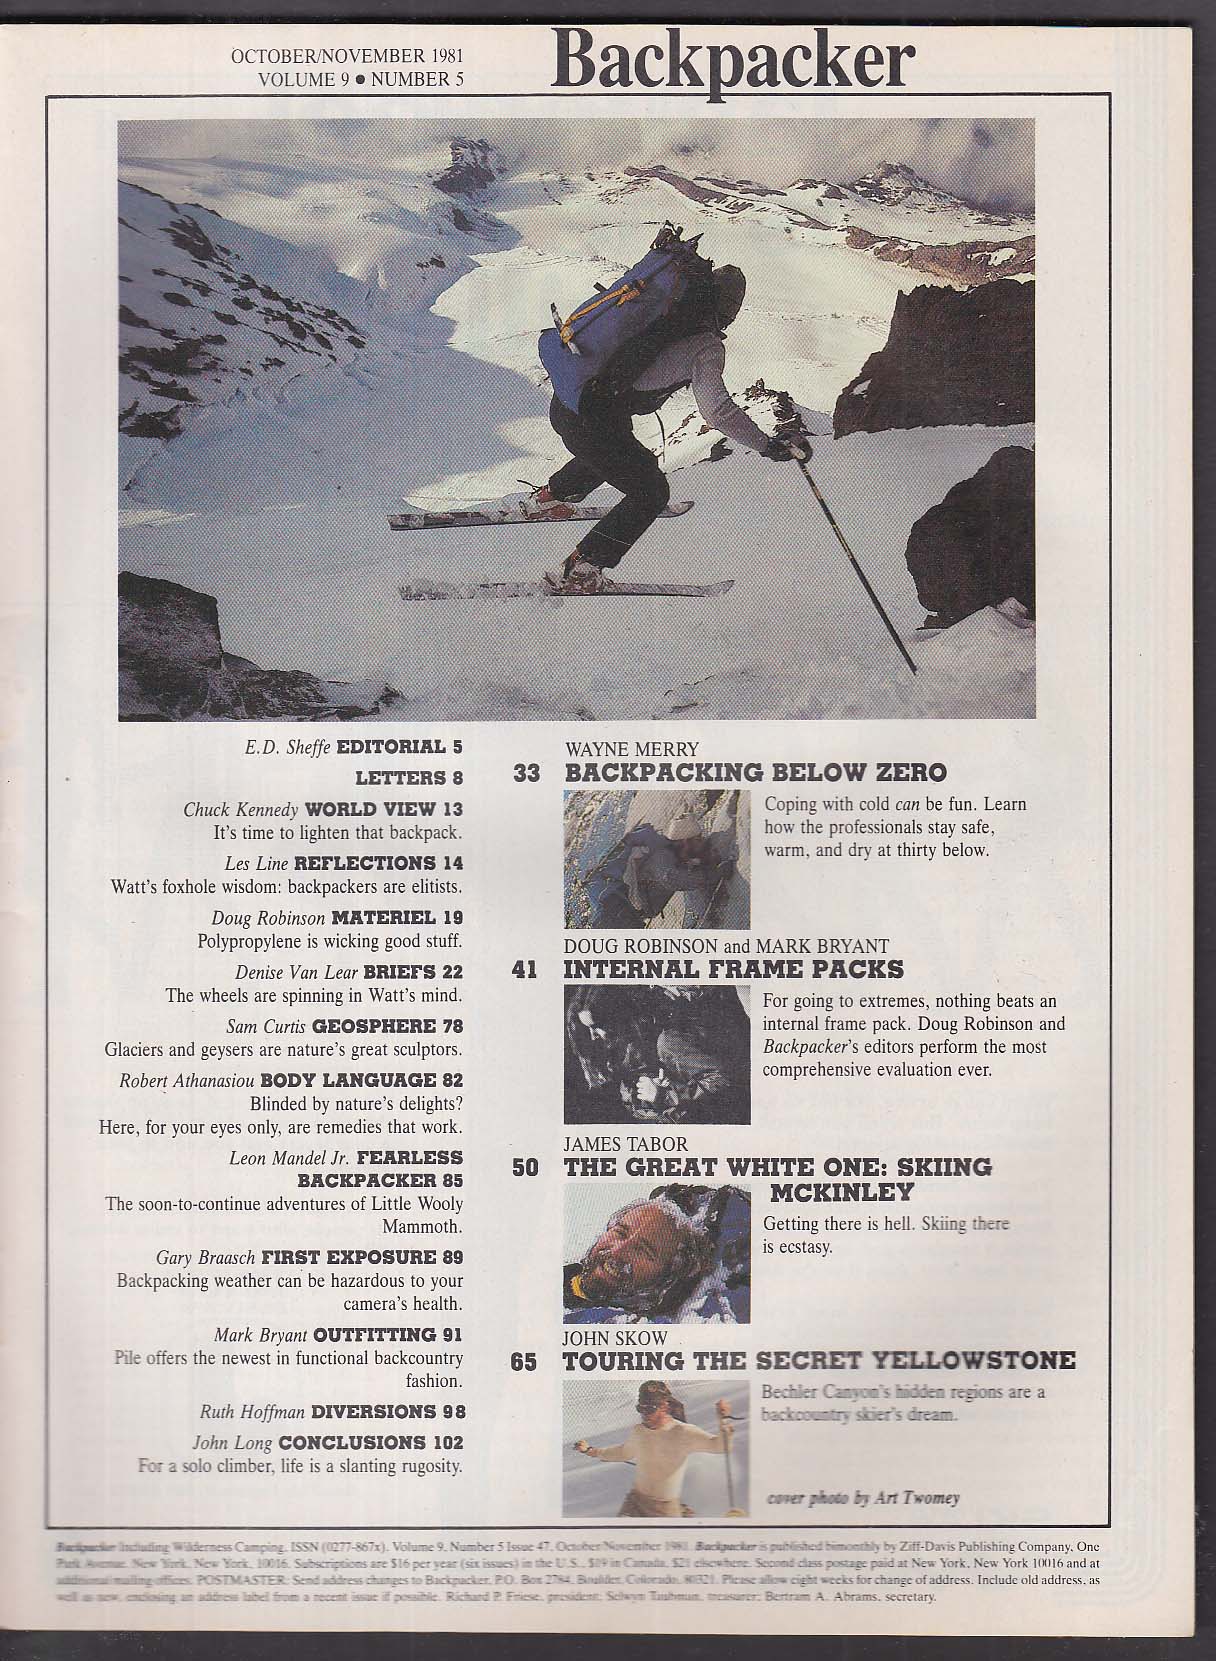 BACKPACKER McKinley Wayne Merry Doug Robinson Bechler Canyon + 10-11 1981